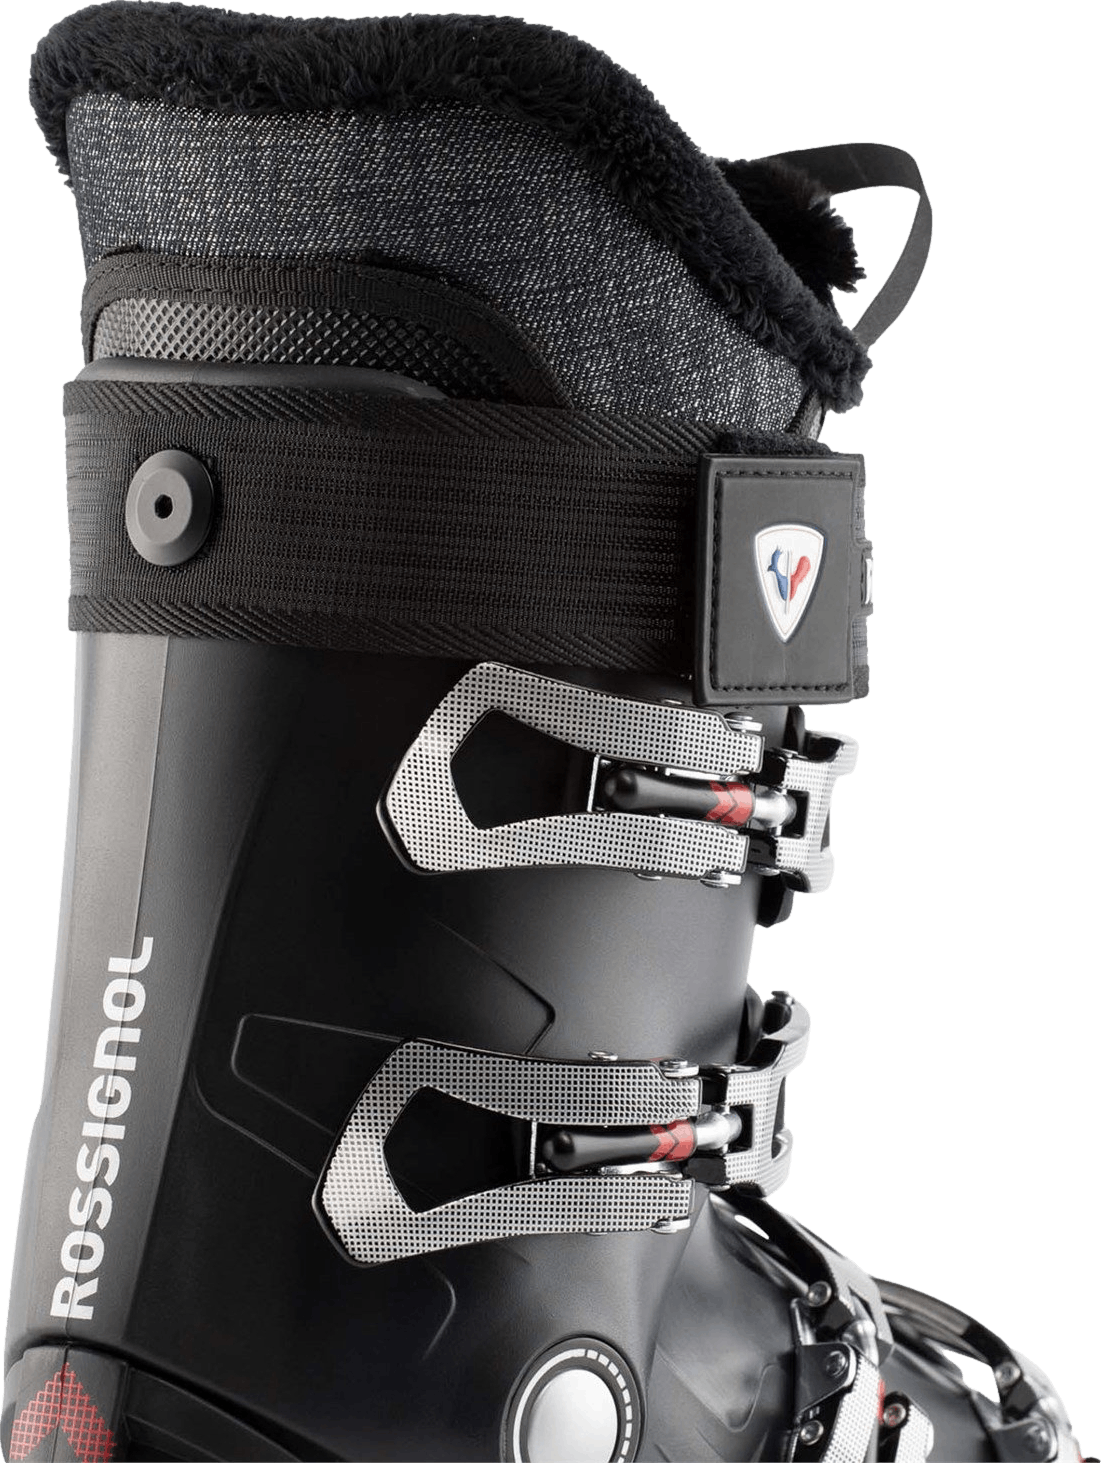 Rossignol Pure Comfort 60 Ski Boots · Women's · 2023 · 22.5